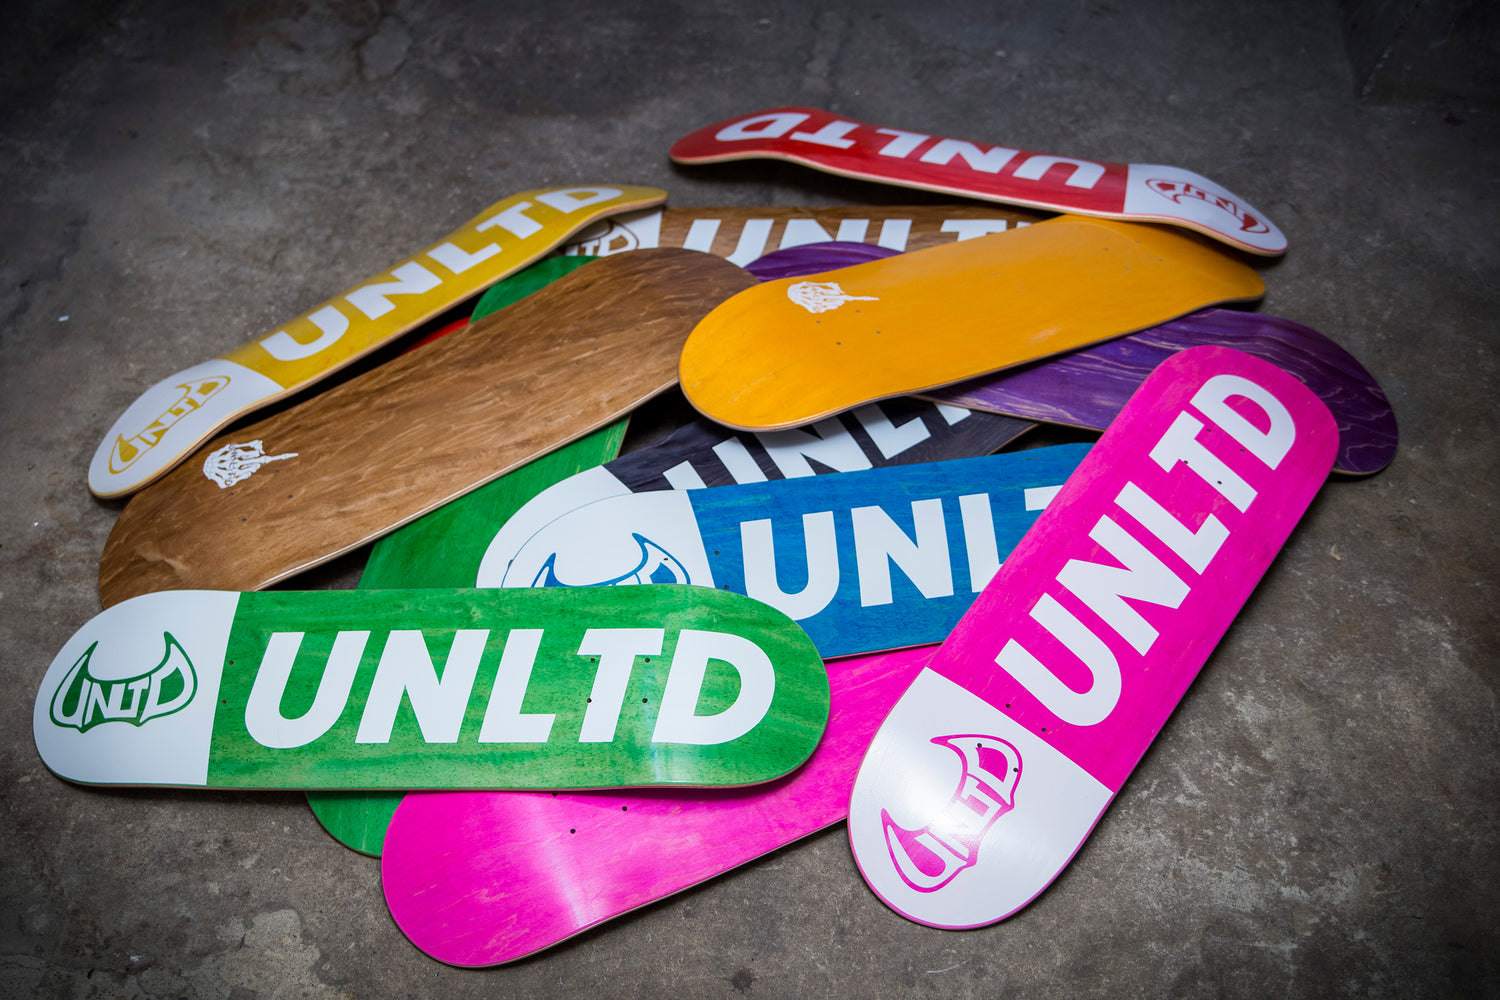 New UNLTD skateboards have arrived!